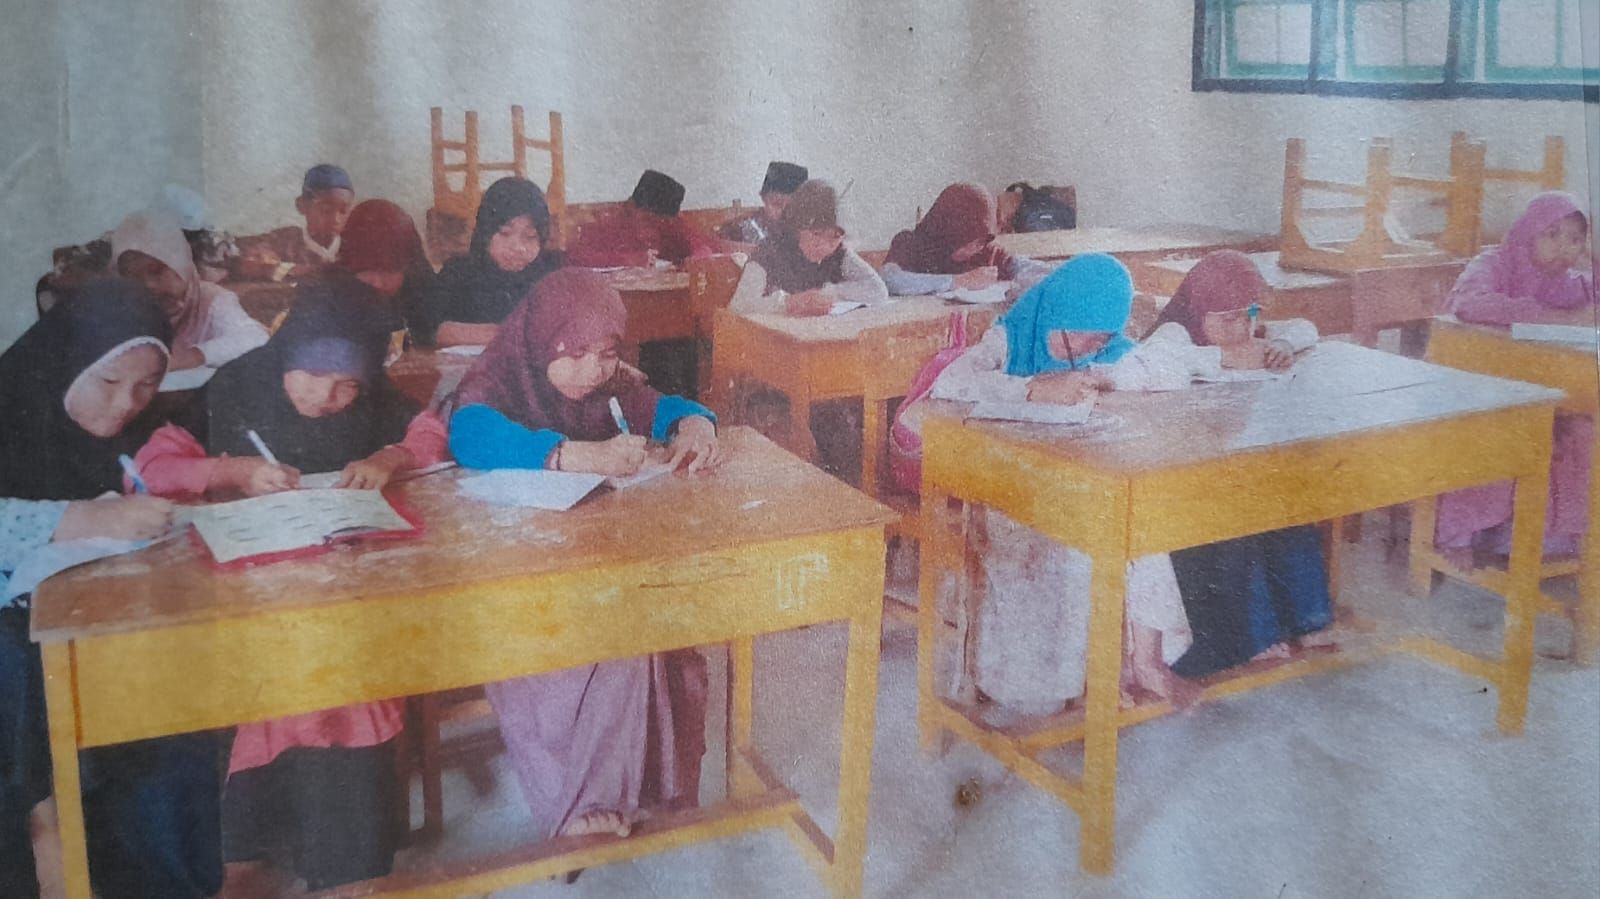 Dokumentasi murid Madrasah Diniyah Nuruttholibin yang sedang belajar di dalam ruangan kelas.